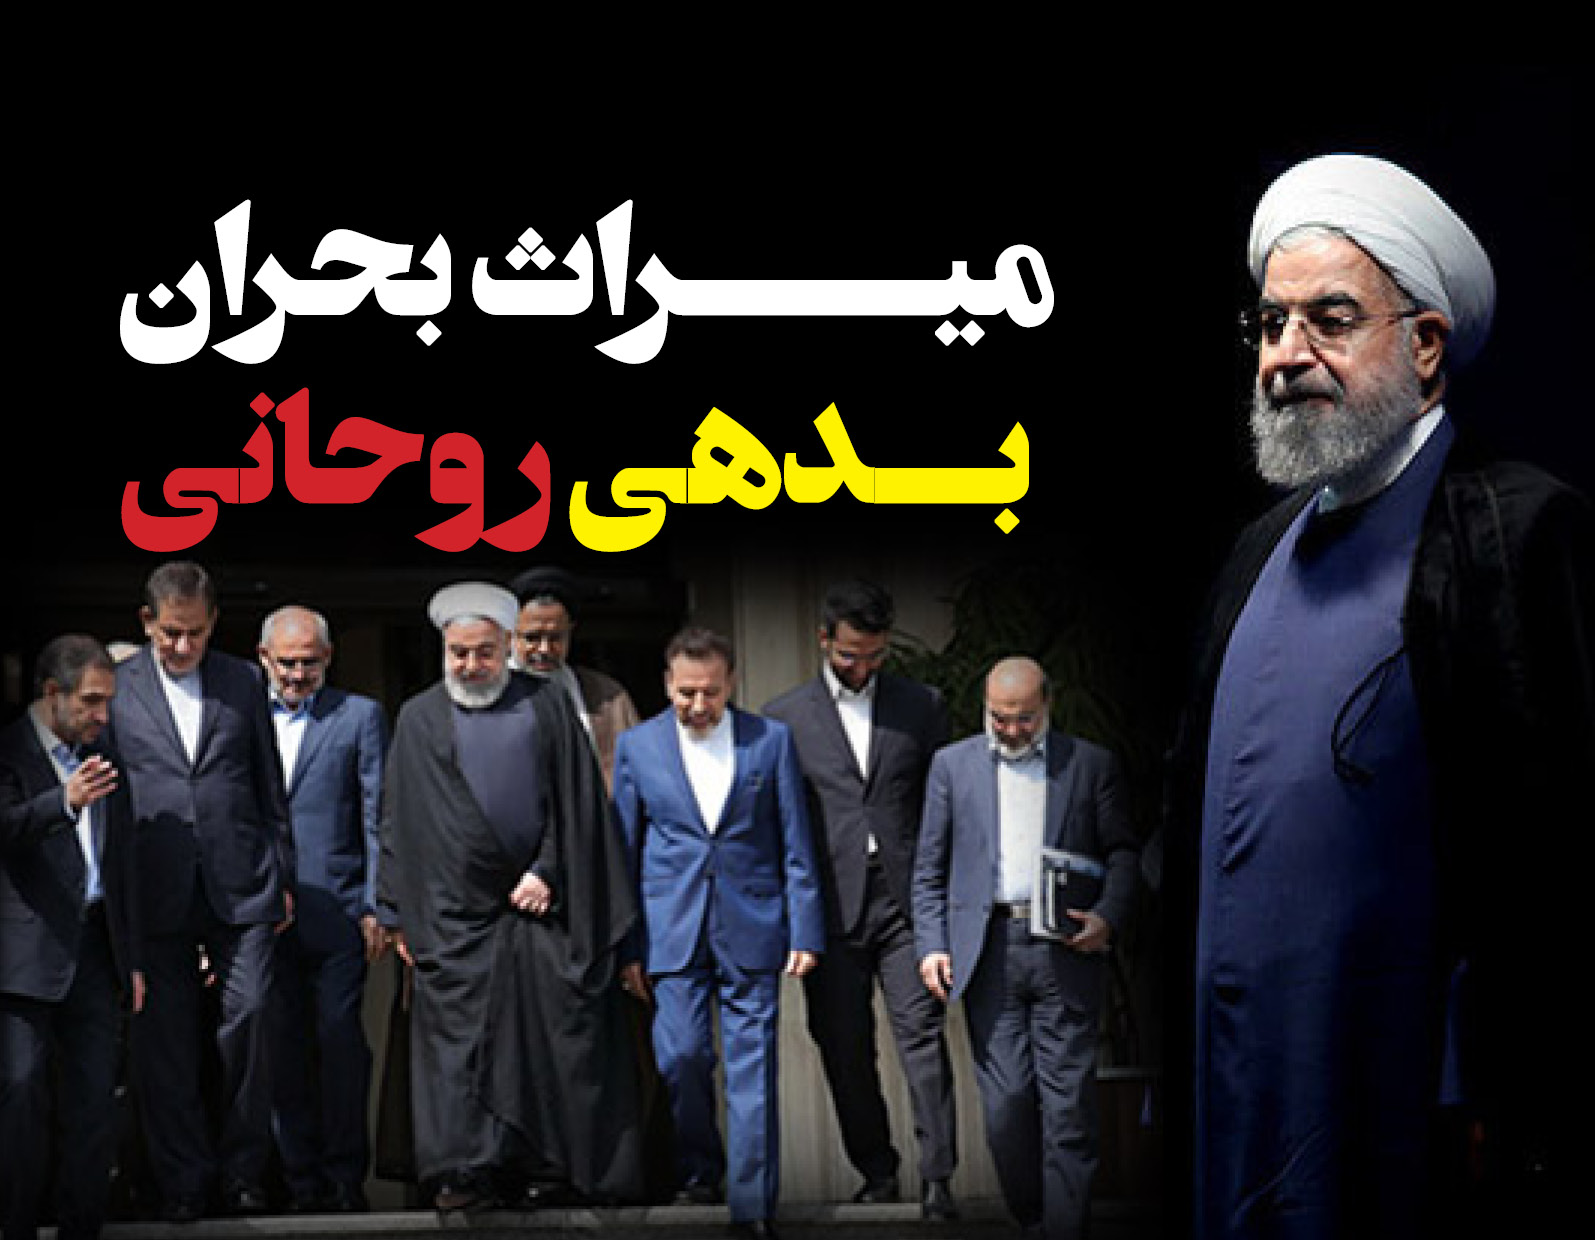 به گزارش خبرانرژی: در پایان دولت دهم بدهی بخش دولتی به سیستم بانکی کشور ۱۰۳٫۷ هزار میلیارد تومان بود که در پایان دولت روحانی به ۶۴۳٫۹ هزار میلیارد تومان افزایش یافت.